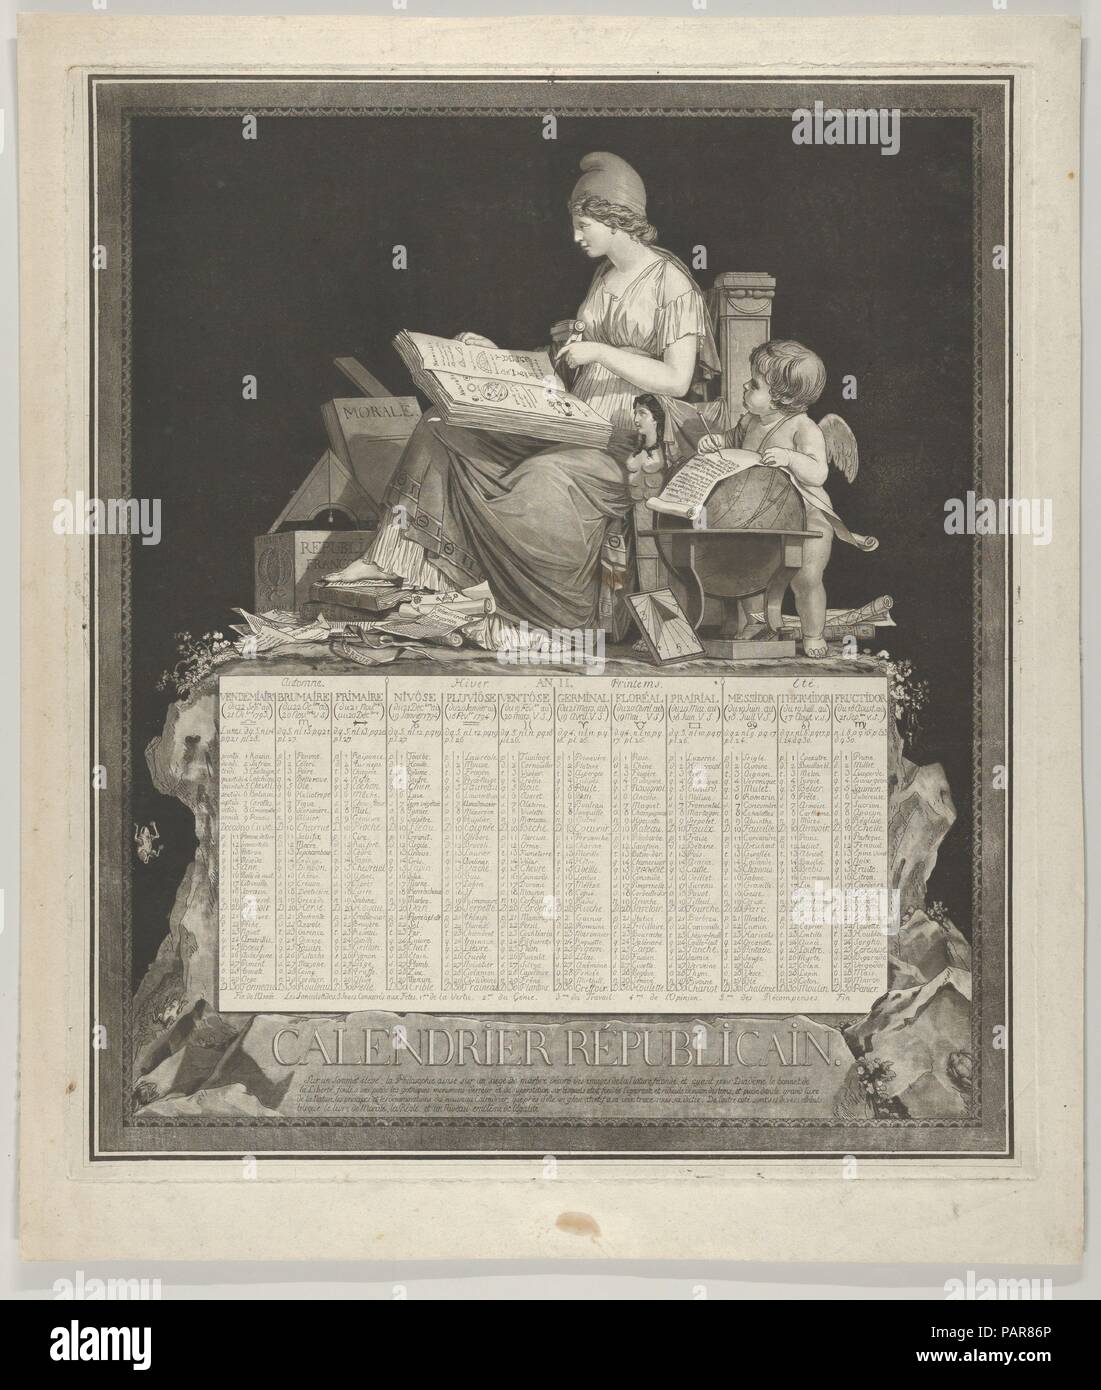 Calendario Rivoluzionario. Artista: Louis Debucourt Philibert (francese, Parigi Parigi 1755-1832). Dimensioni: foglio: 19 3/16 × 16 3/8 in. (48,8 × 41,6 cm) Piastra: 17 1/4 × 14 15/16 in. (43,8 × 38 cm) immagine: 16 3/4 × 14 1/4 in. (42,6 × 36,2 cm). Data: 1793. Museo: Metropolitan Museum of Art di New York, Stati Uniti d'America. Foto Stock